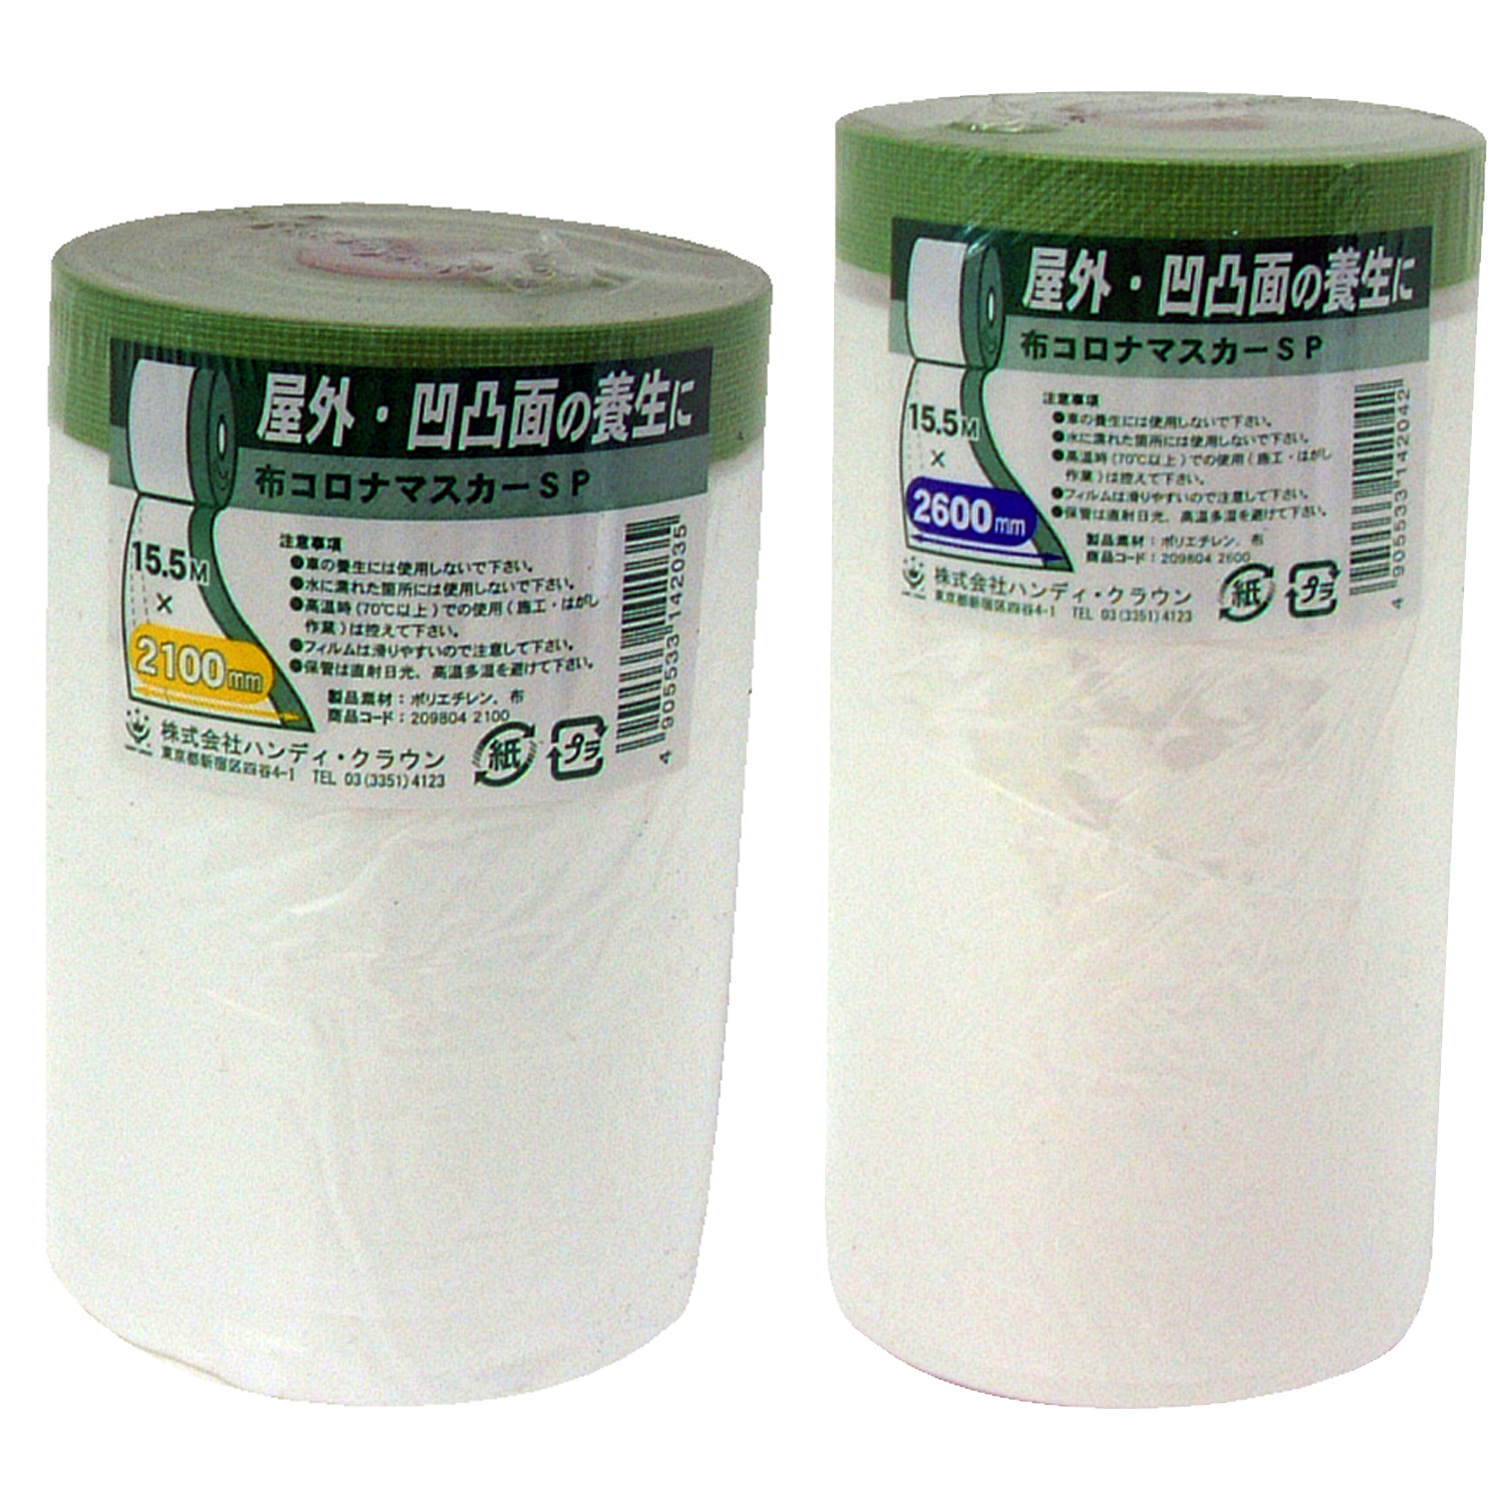 日本未入荷 和紙テープ付き 養生マスカー 2600mm×35m 紙ポリマスカー 室内塗装 空調工事 家具塗装 車輌塗装 